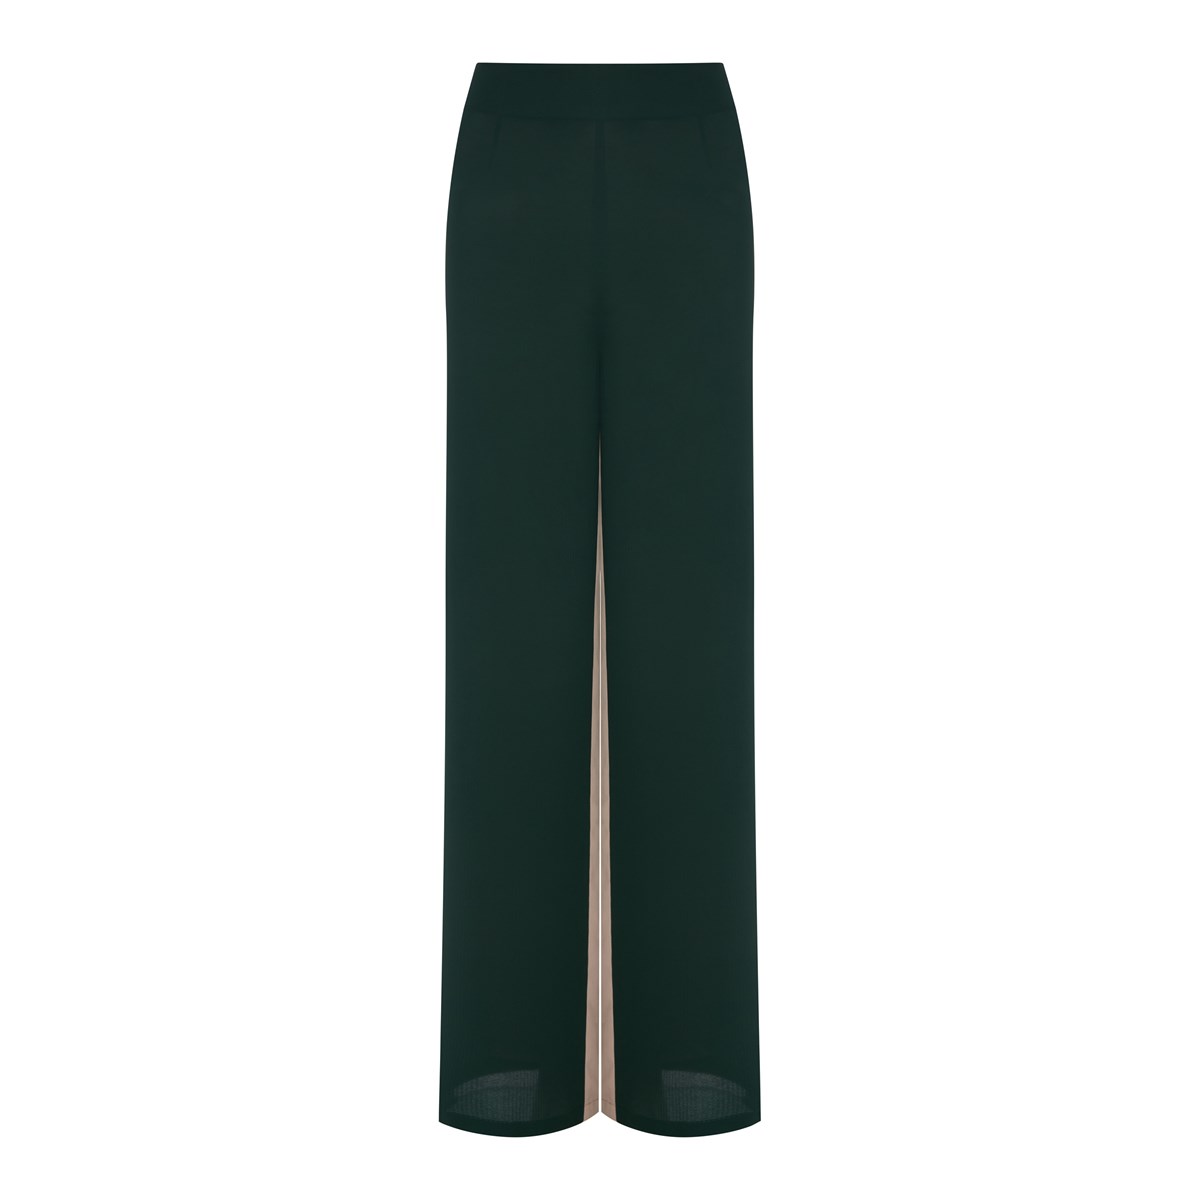 Темно-зеленые шифоновые брюки SOL SELIVANOVA OLGA — купить винтернет-магазине lio